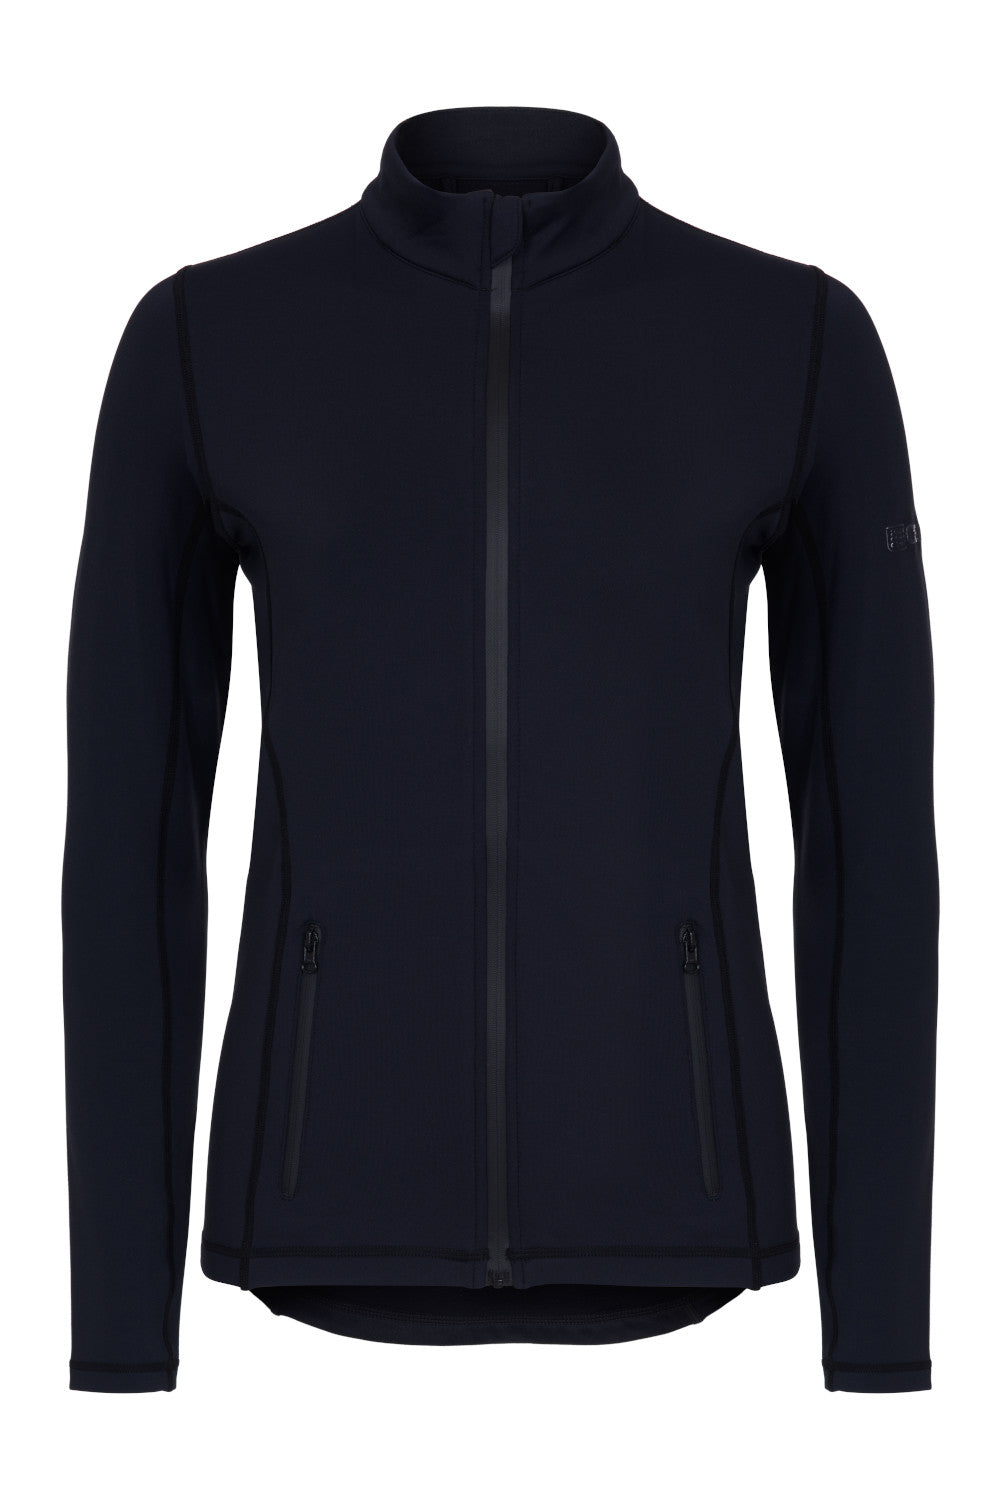 The H20 Winter Fleece (Women's/Black) | Mid-layer Tops | Crewroom